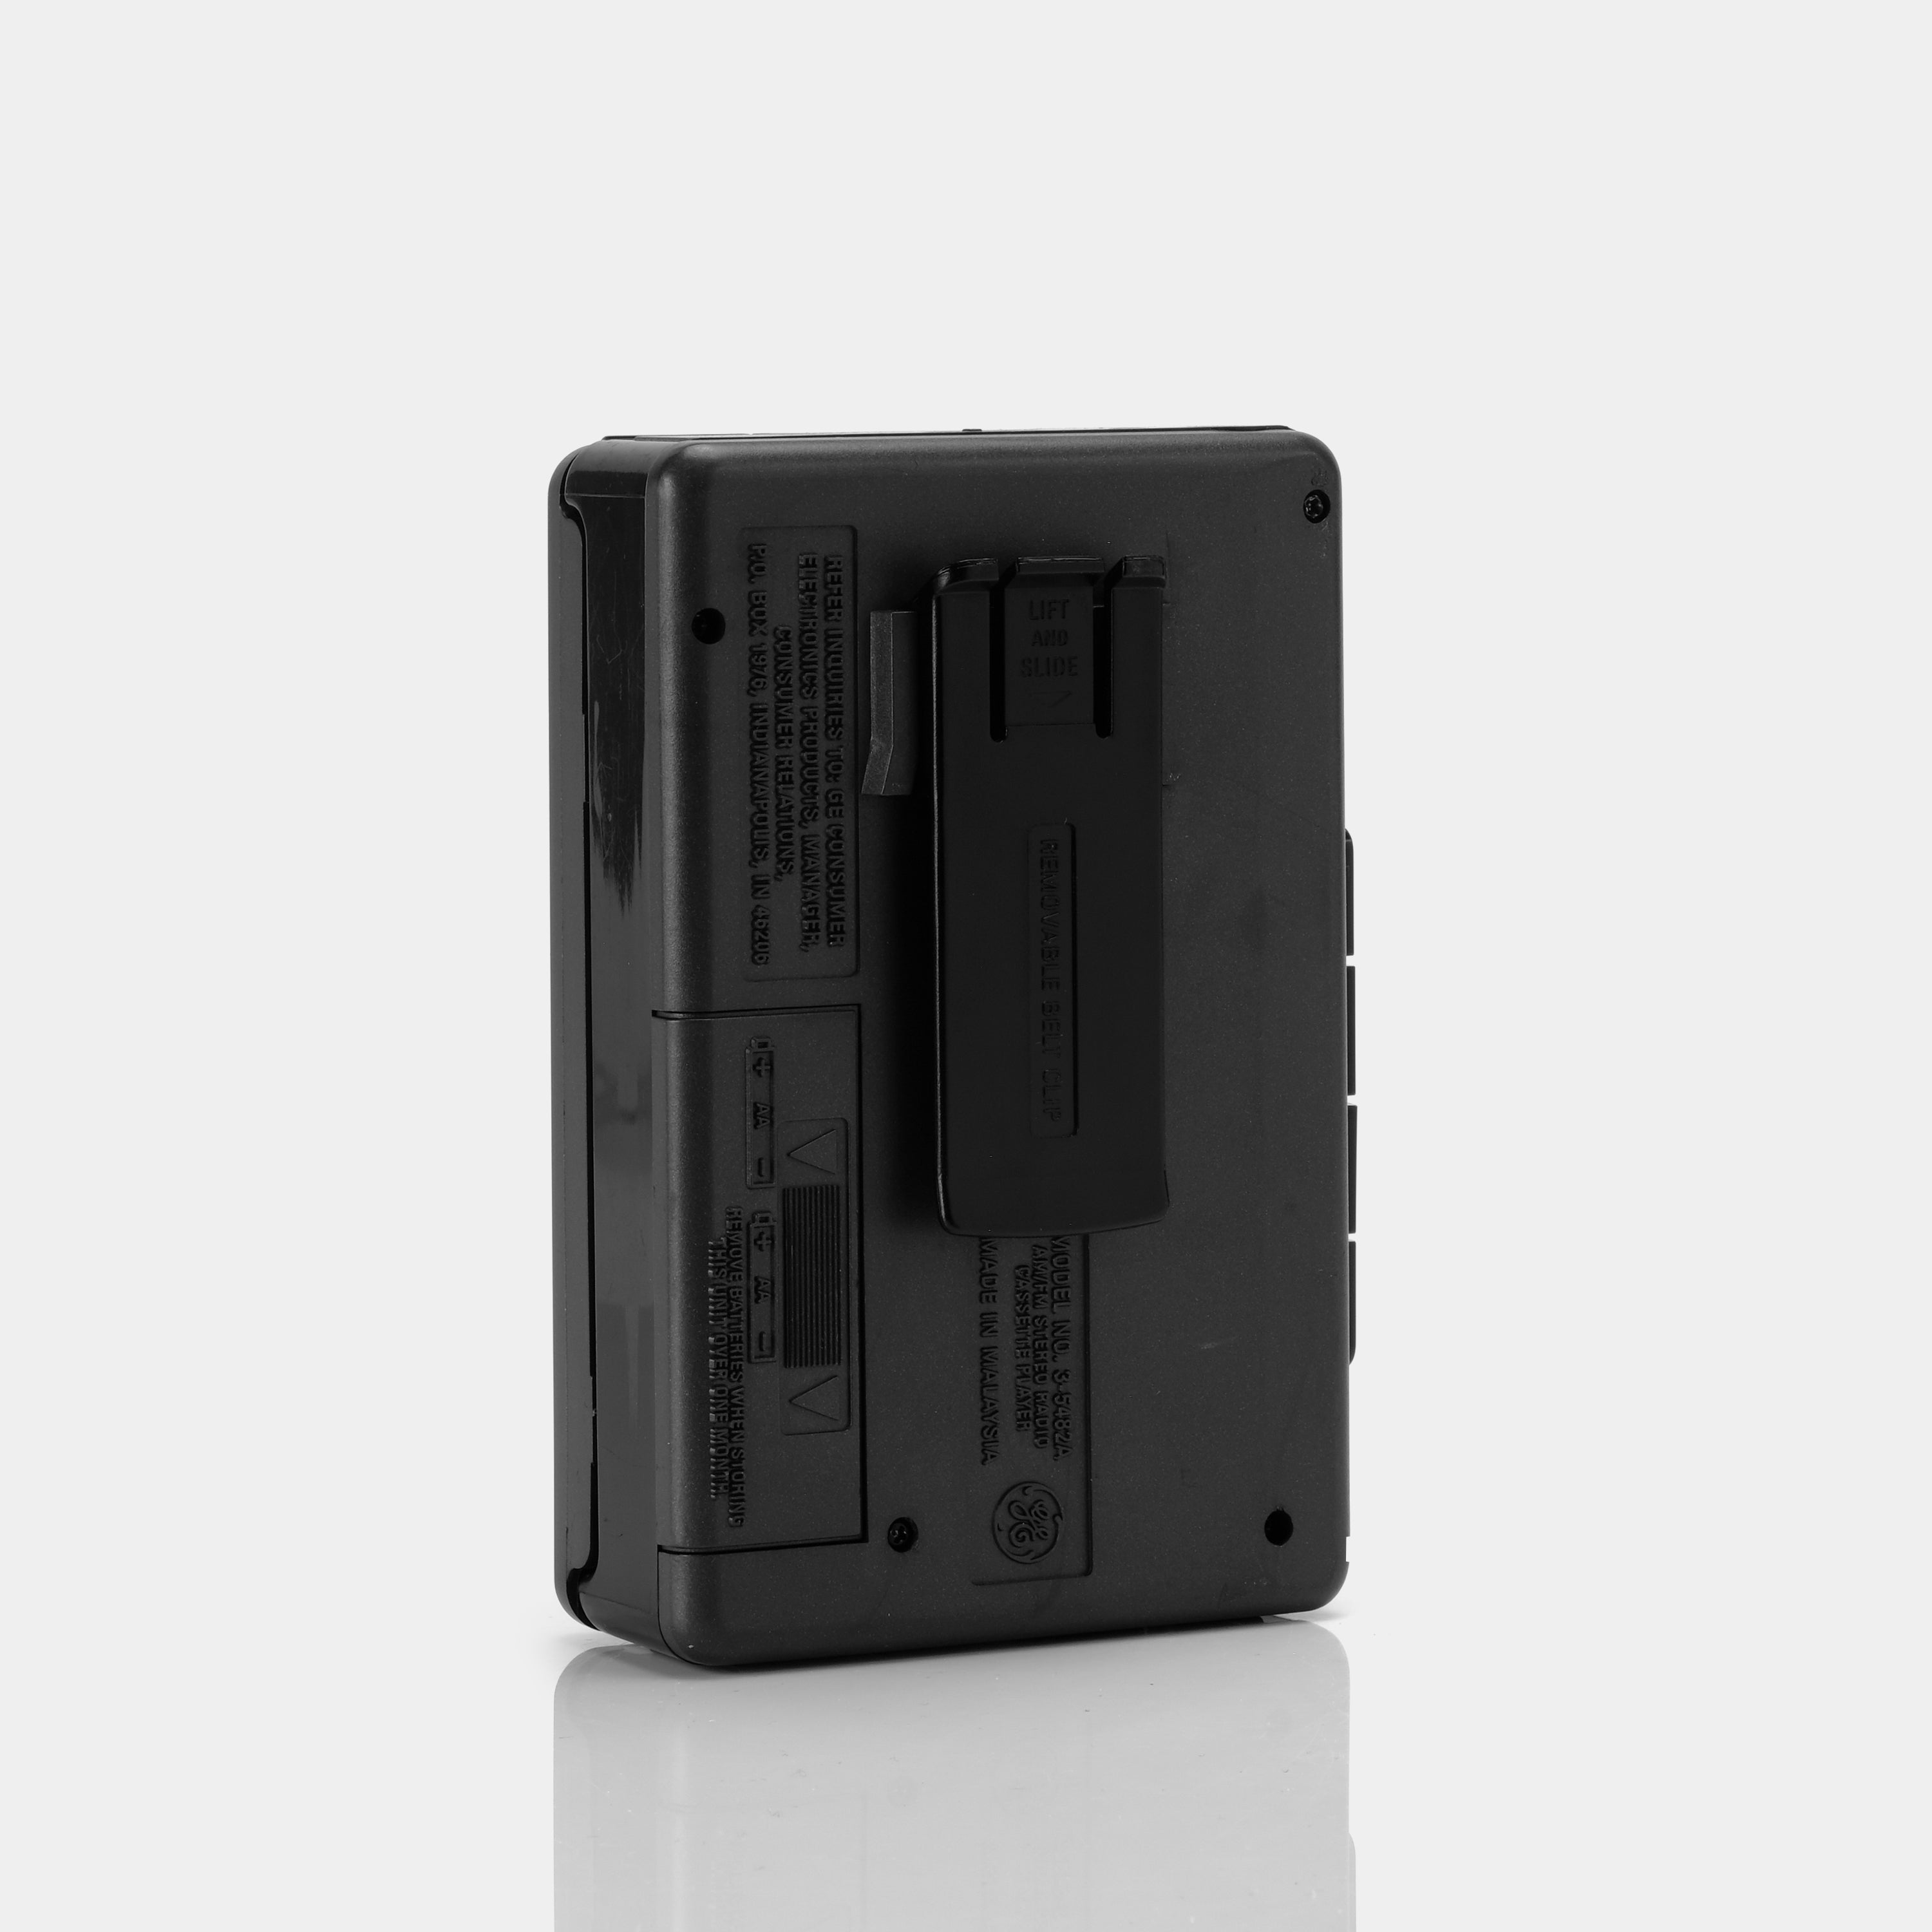 General Electric Model 3-5482A AM/FM Portable Cassette Player